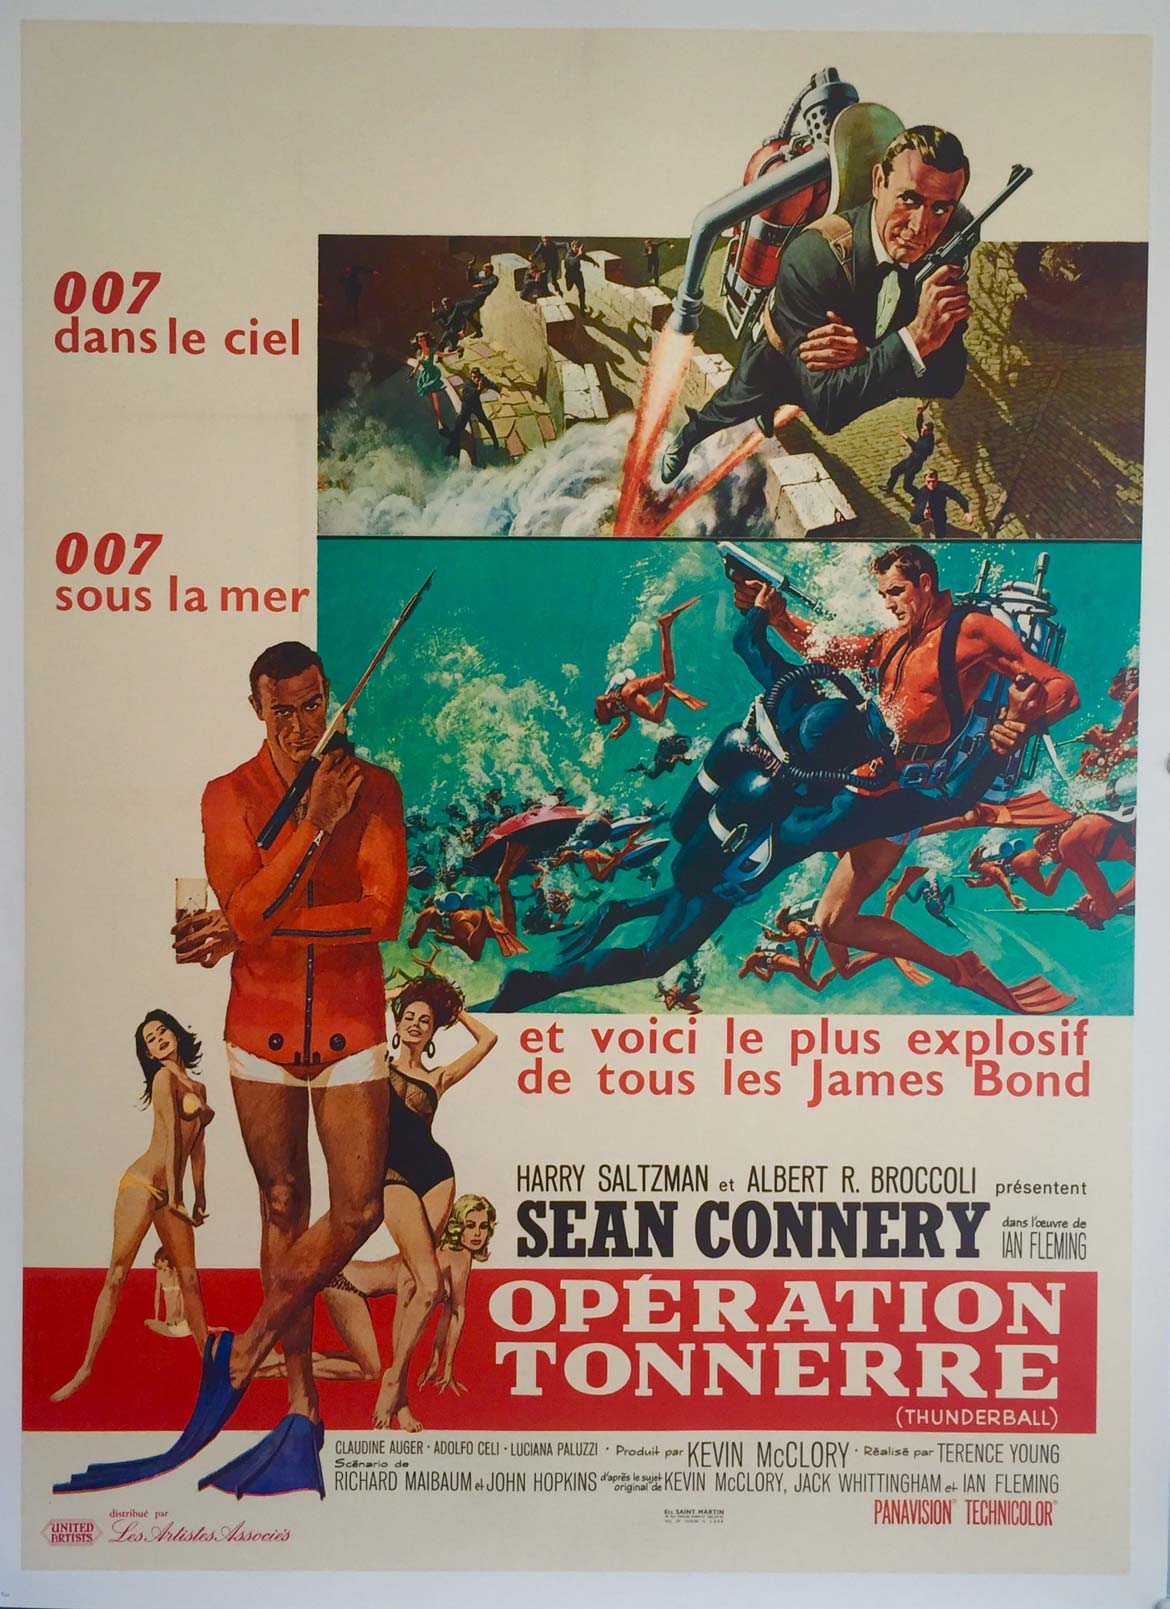 Affiche ancienne de Cinéma James Bond pour le film Opération Tonnerre (thunderball)  avec Sean Connery distribuée par les artistes associés.  United artists.  Le plus explosif de tous les James Bond.